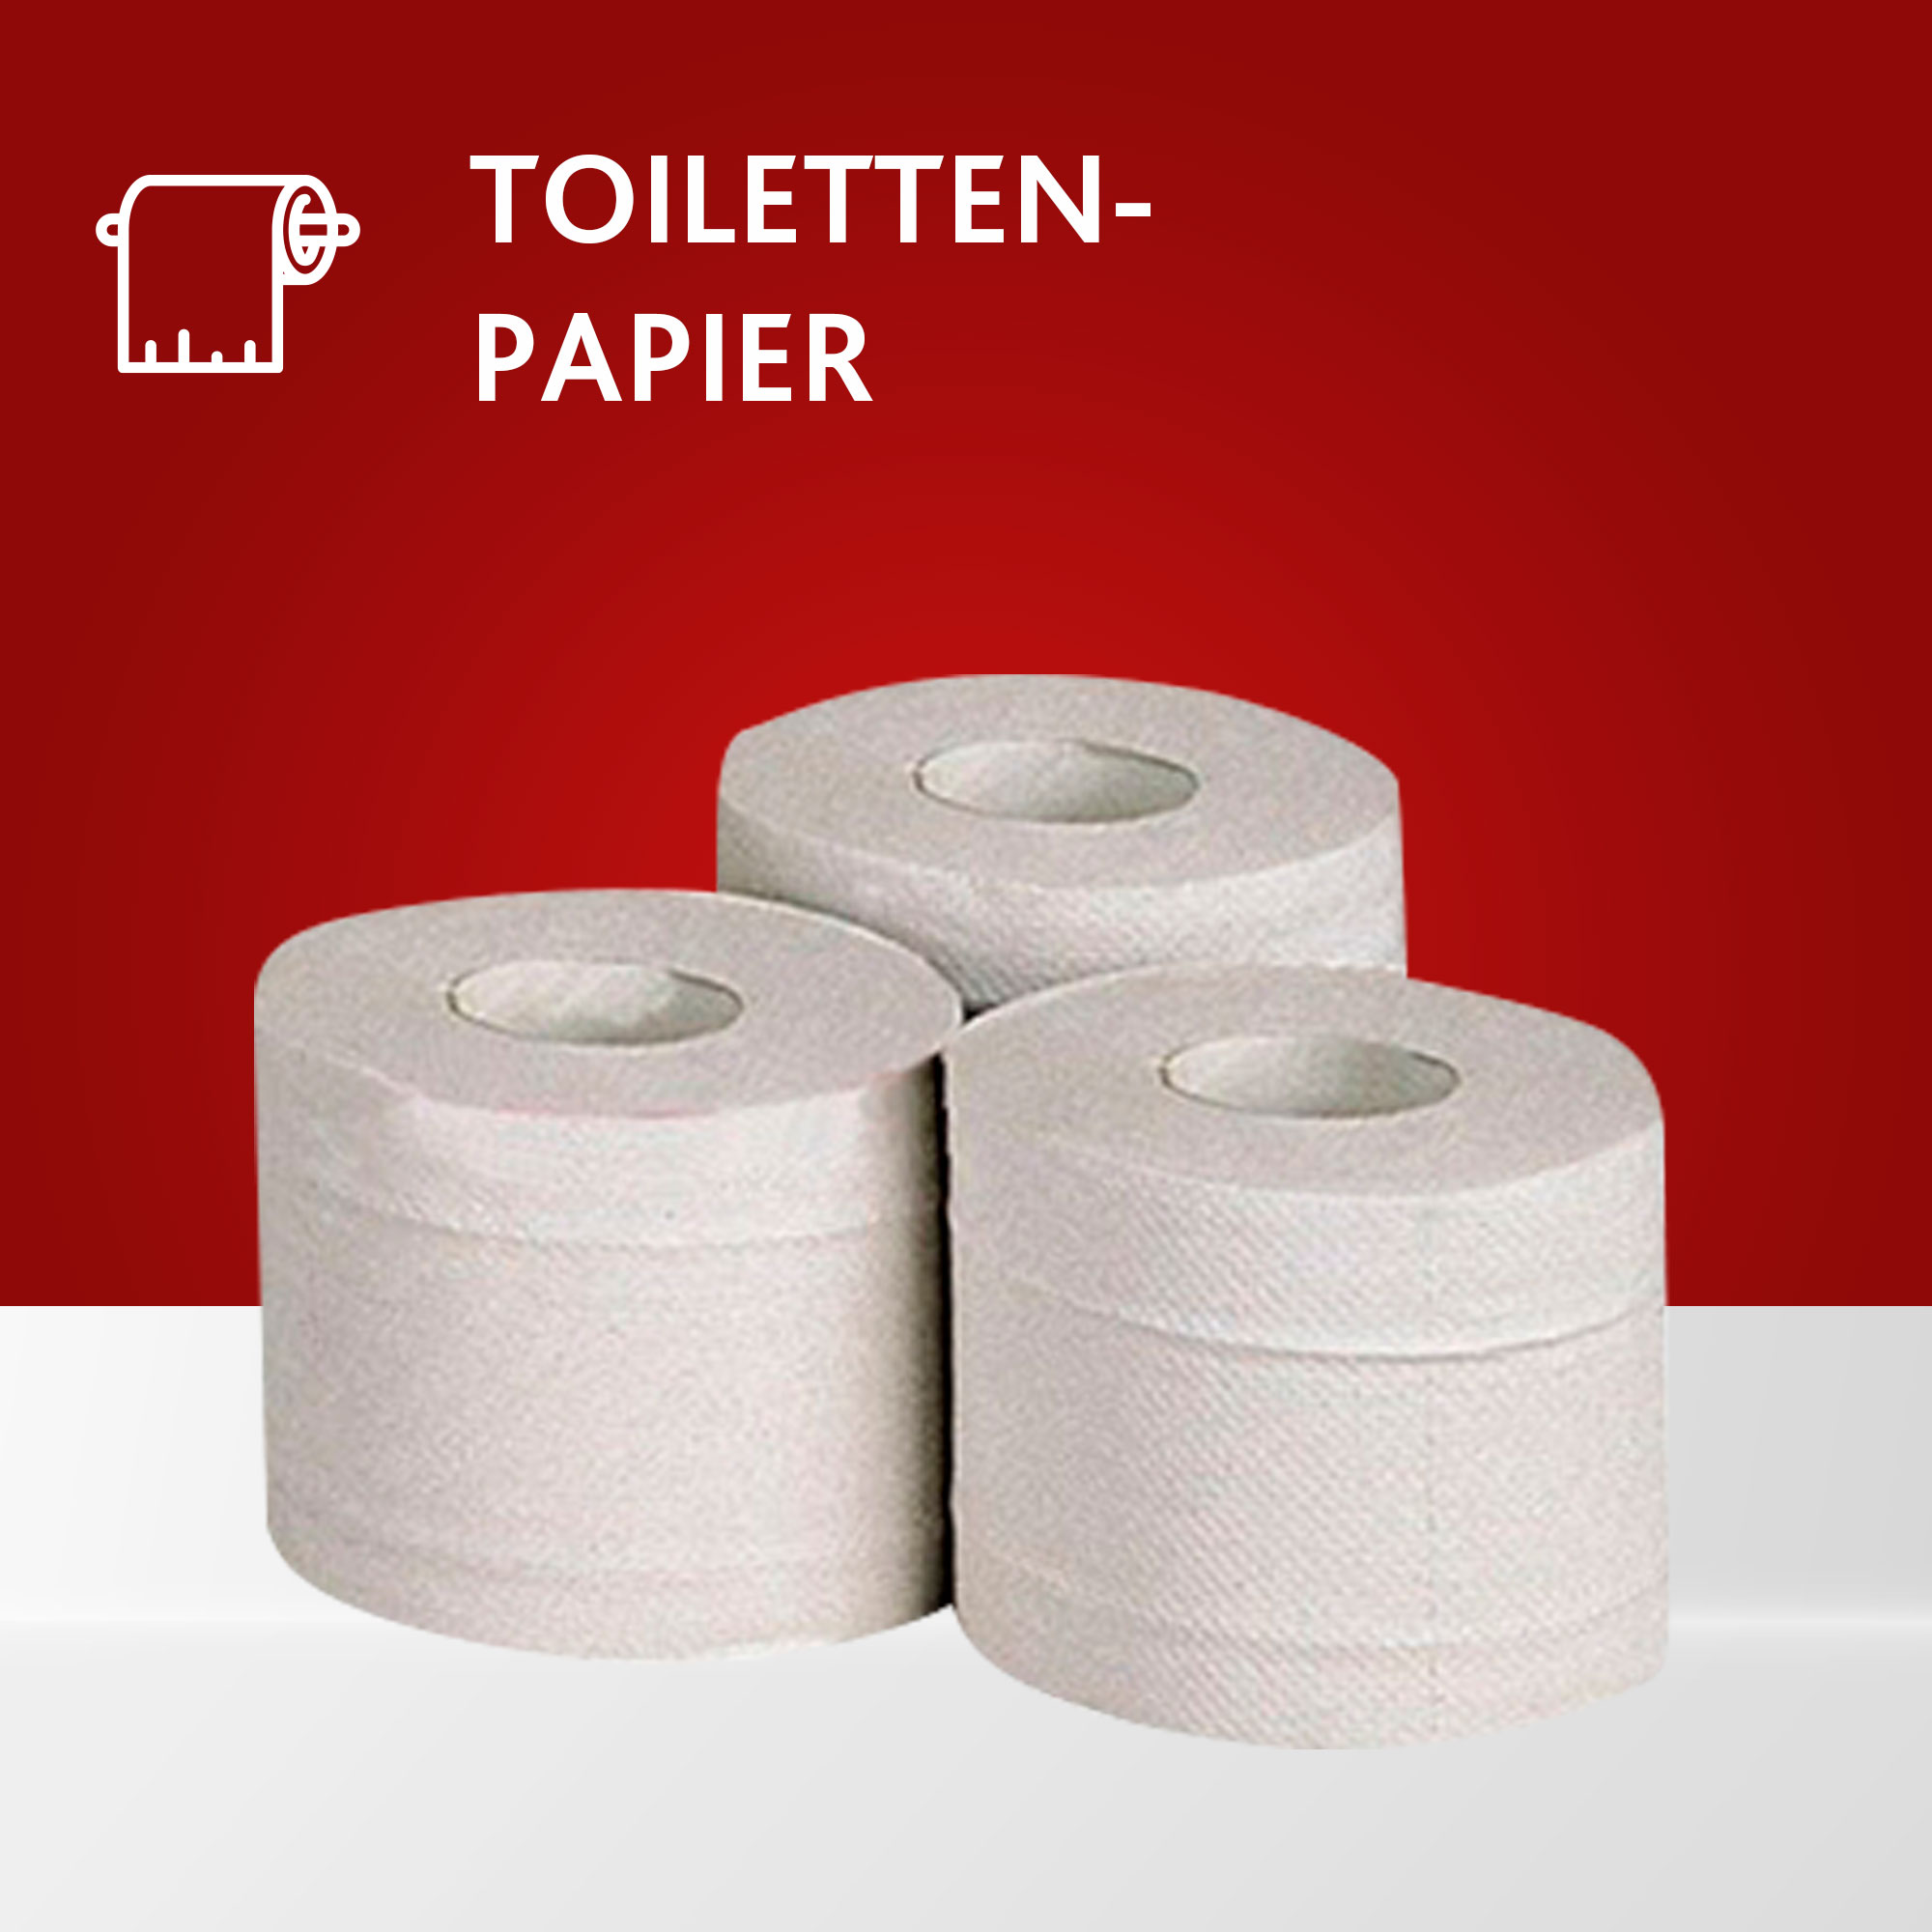 Toilettenpapier online kaufen